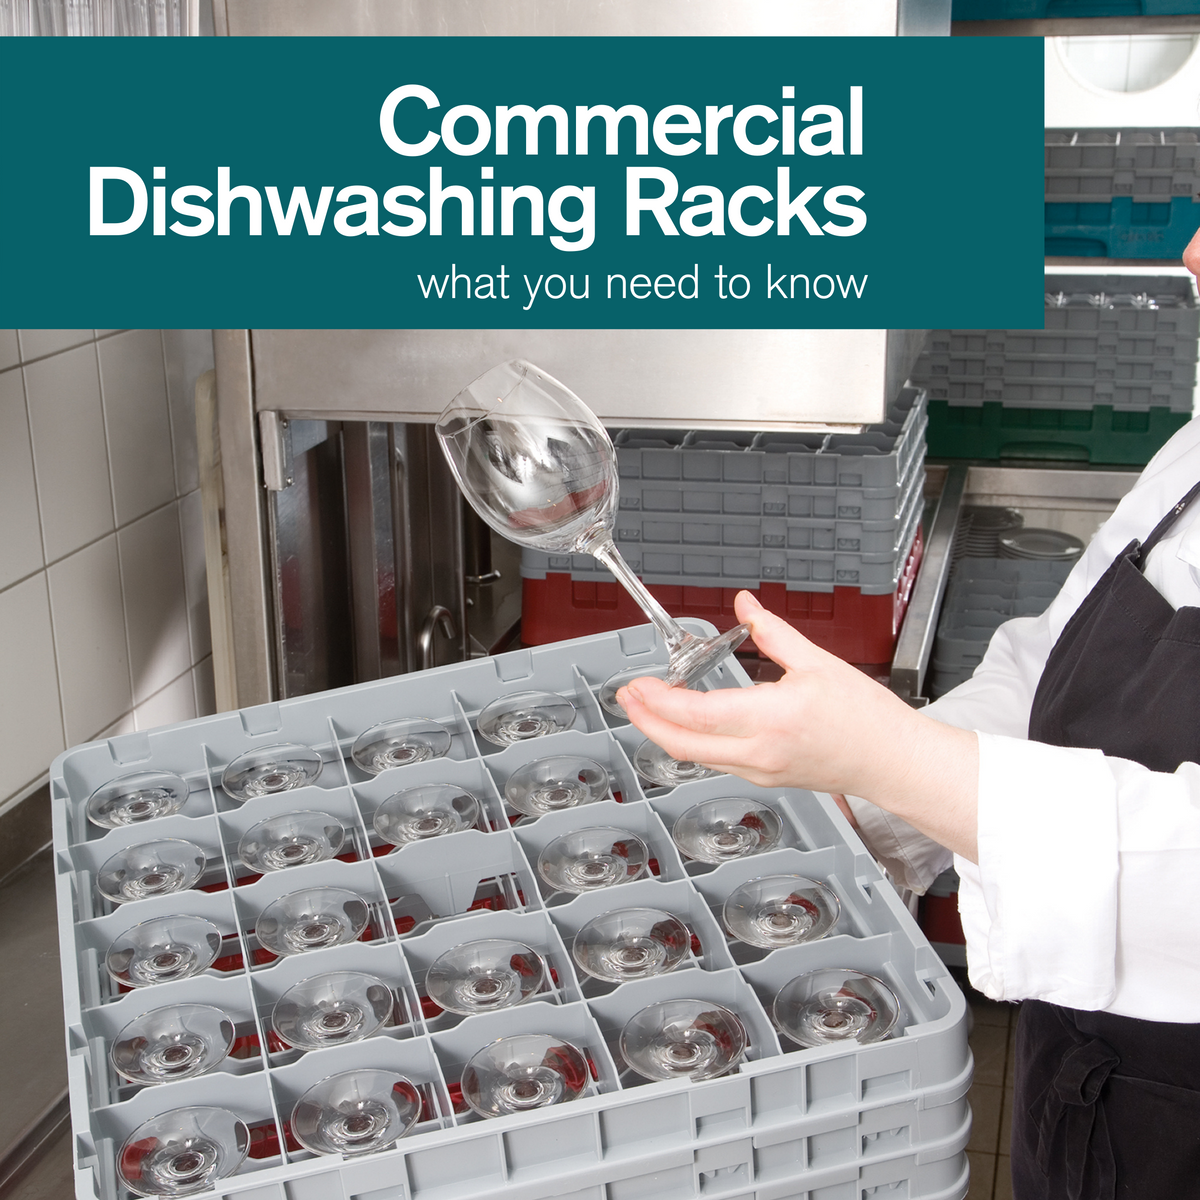 http://chefequipment.com/cdn/shop/articles/Commercial_Dishwashing_Racks_1200x1200.png?v=1642777207